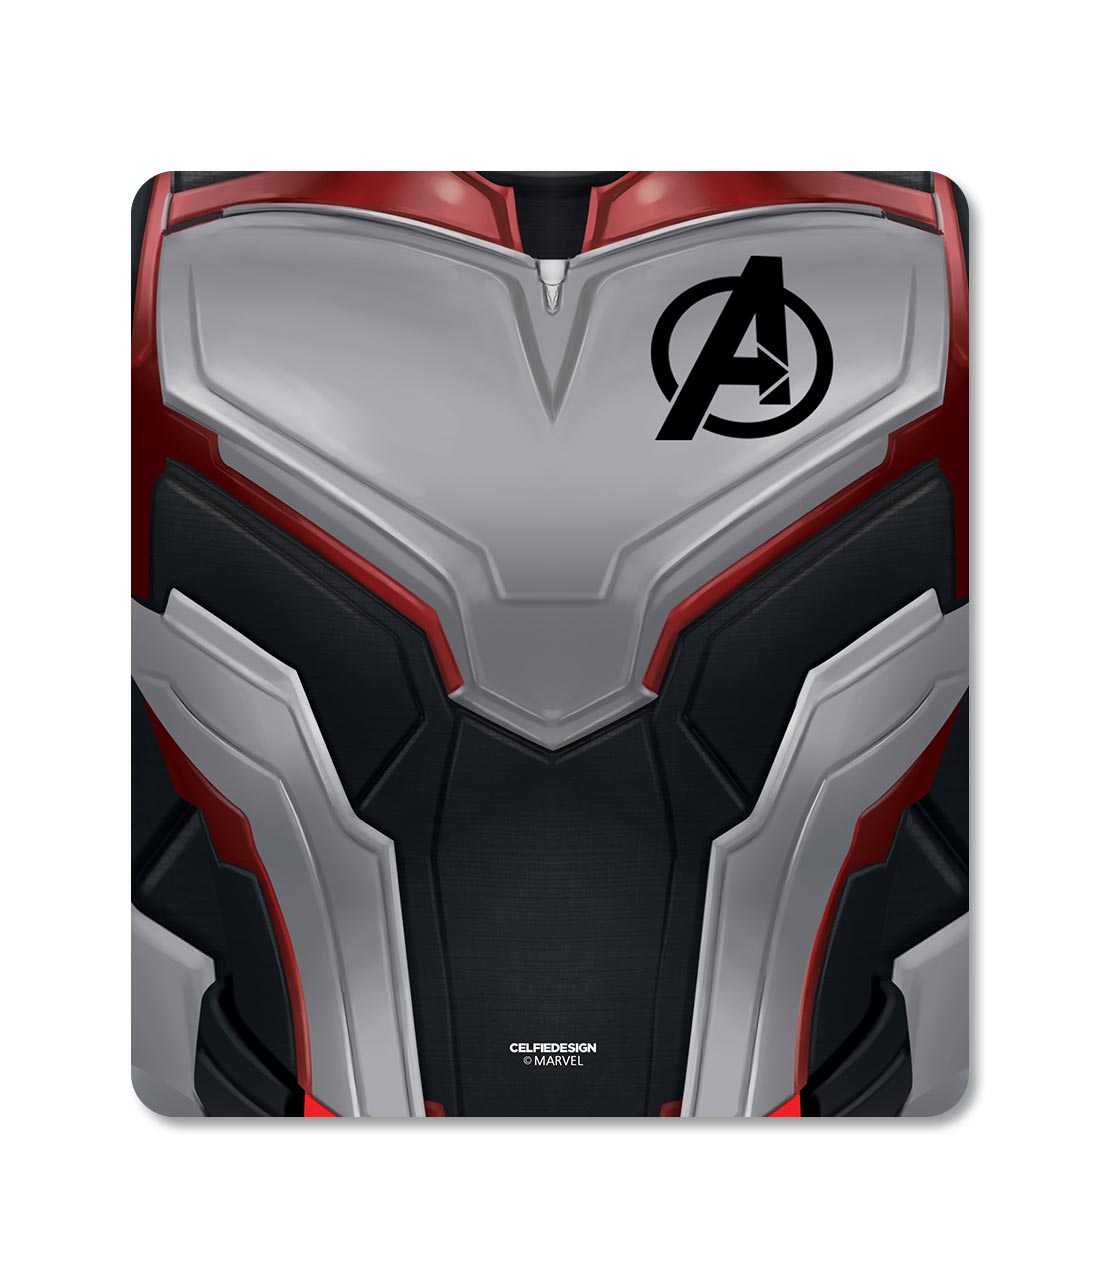 Avengers Endgame Suit - Mouse Pad